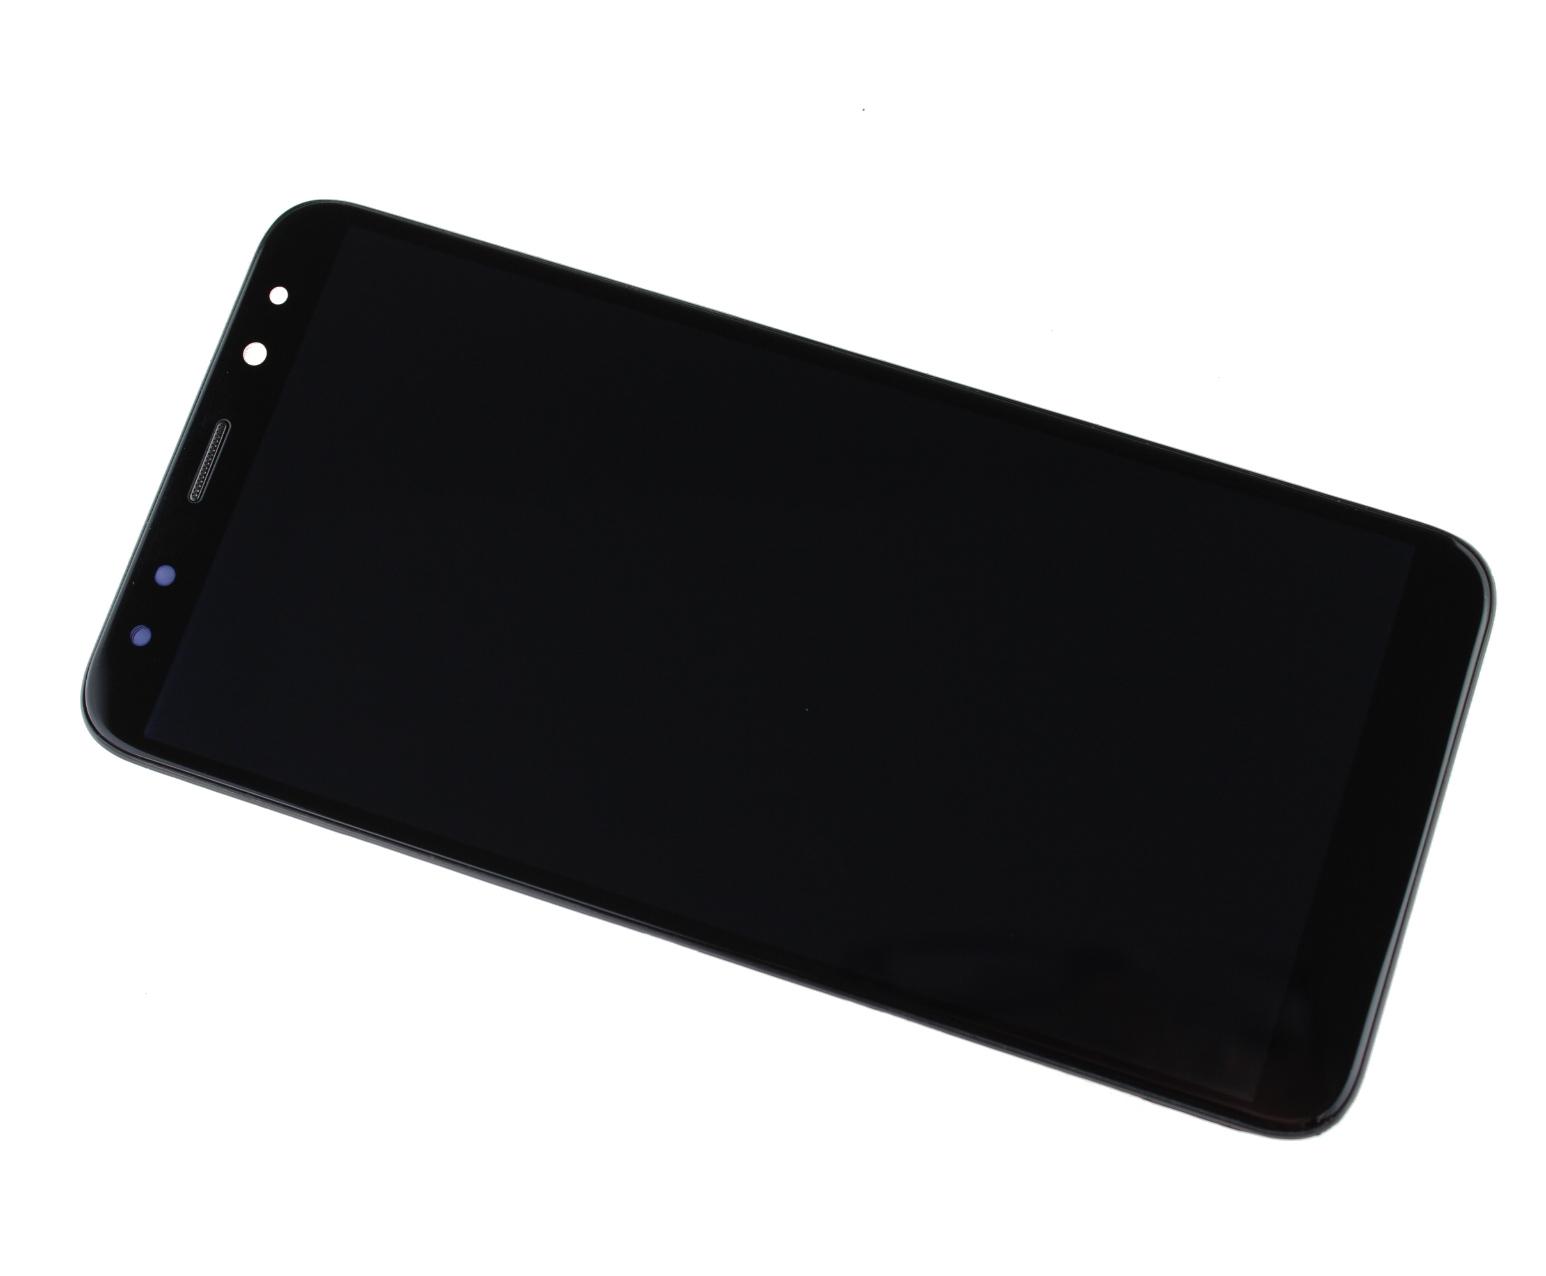 Originál LCD + Dotyková vrstva Huawei Mate 10 Lite RNE-L01 černá repasovaný díl - vyměněné sklíčko s rámečkem